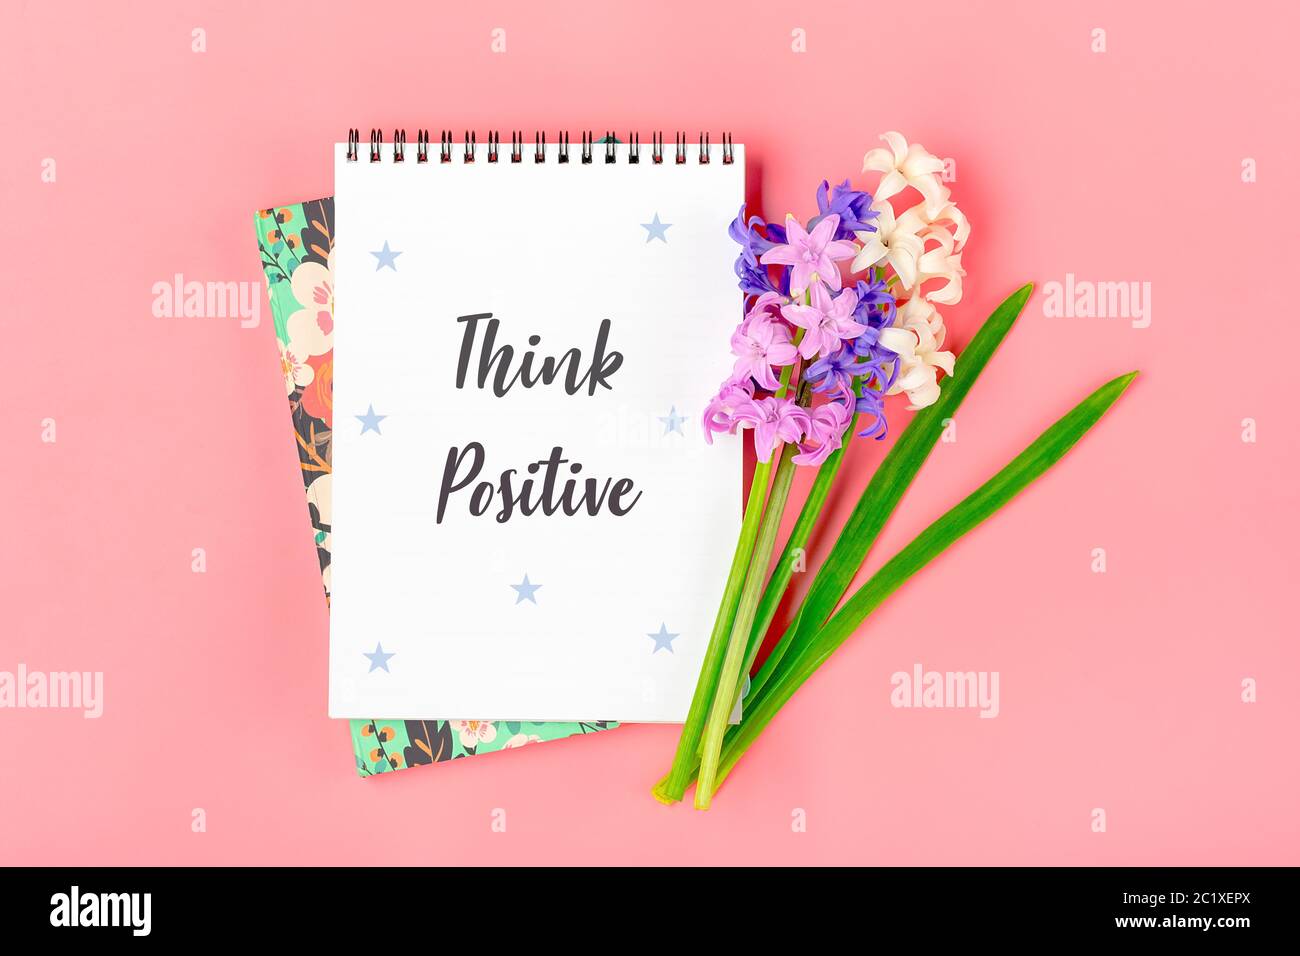 Weißes Notizbuch, Blumenstrauß von Hyazinthen auf rosa Hintergrund Flat Lay Draufsicht Text Think positive - Motivations-Slogan Kreatives Konzept Stockfoto